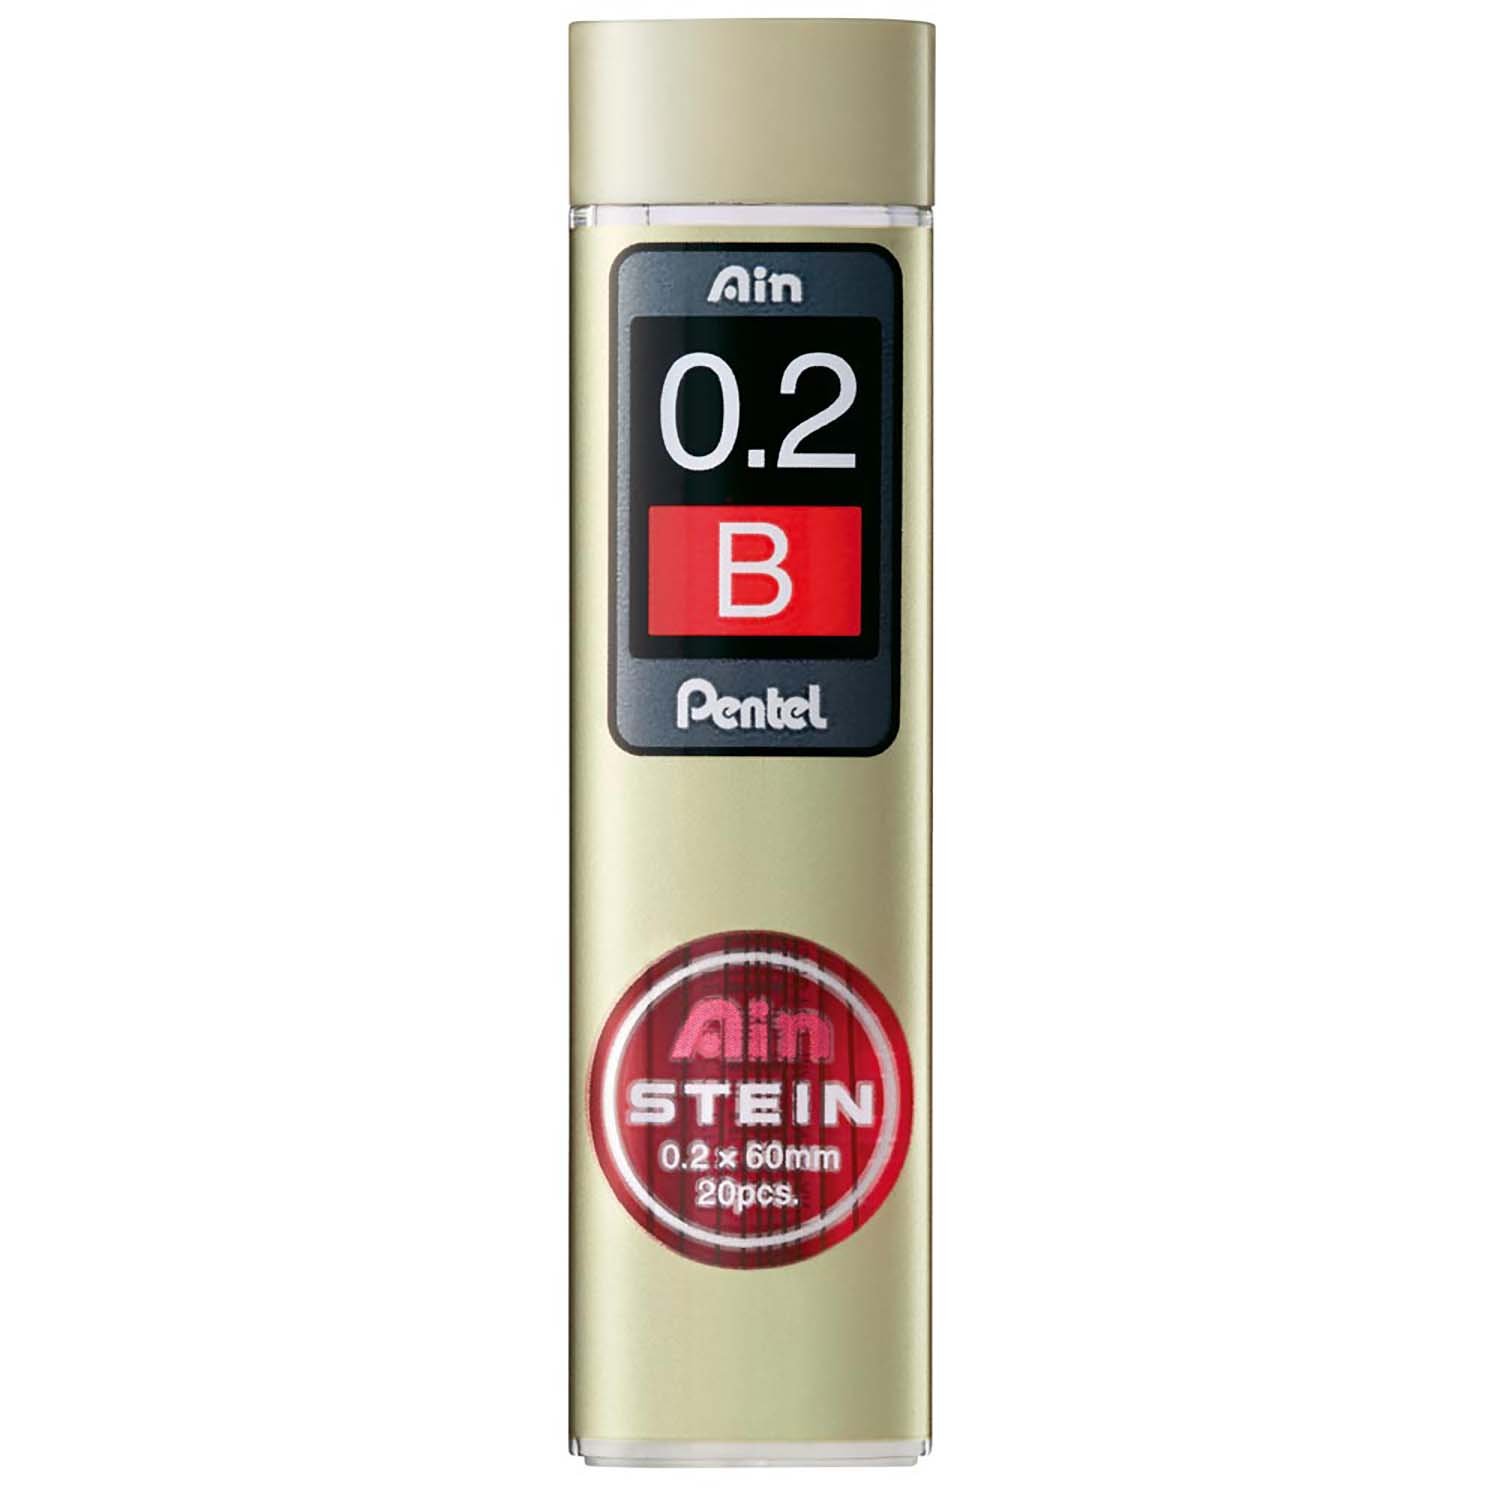 Pentel C272W-B "AIN STEIN" Feinmine für Druckbleistift, 10 x 20 Feinminen